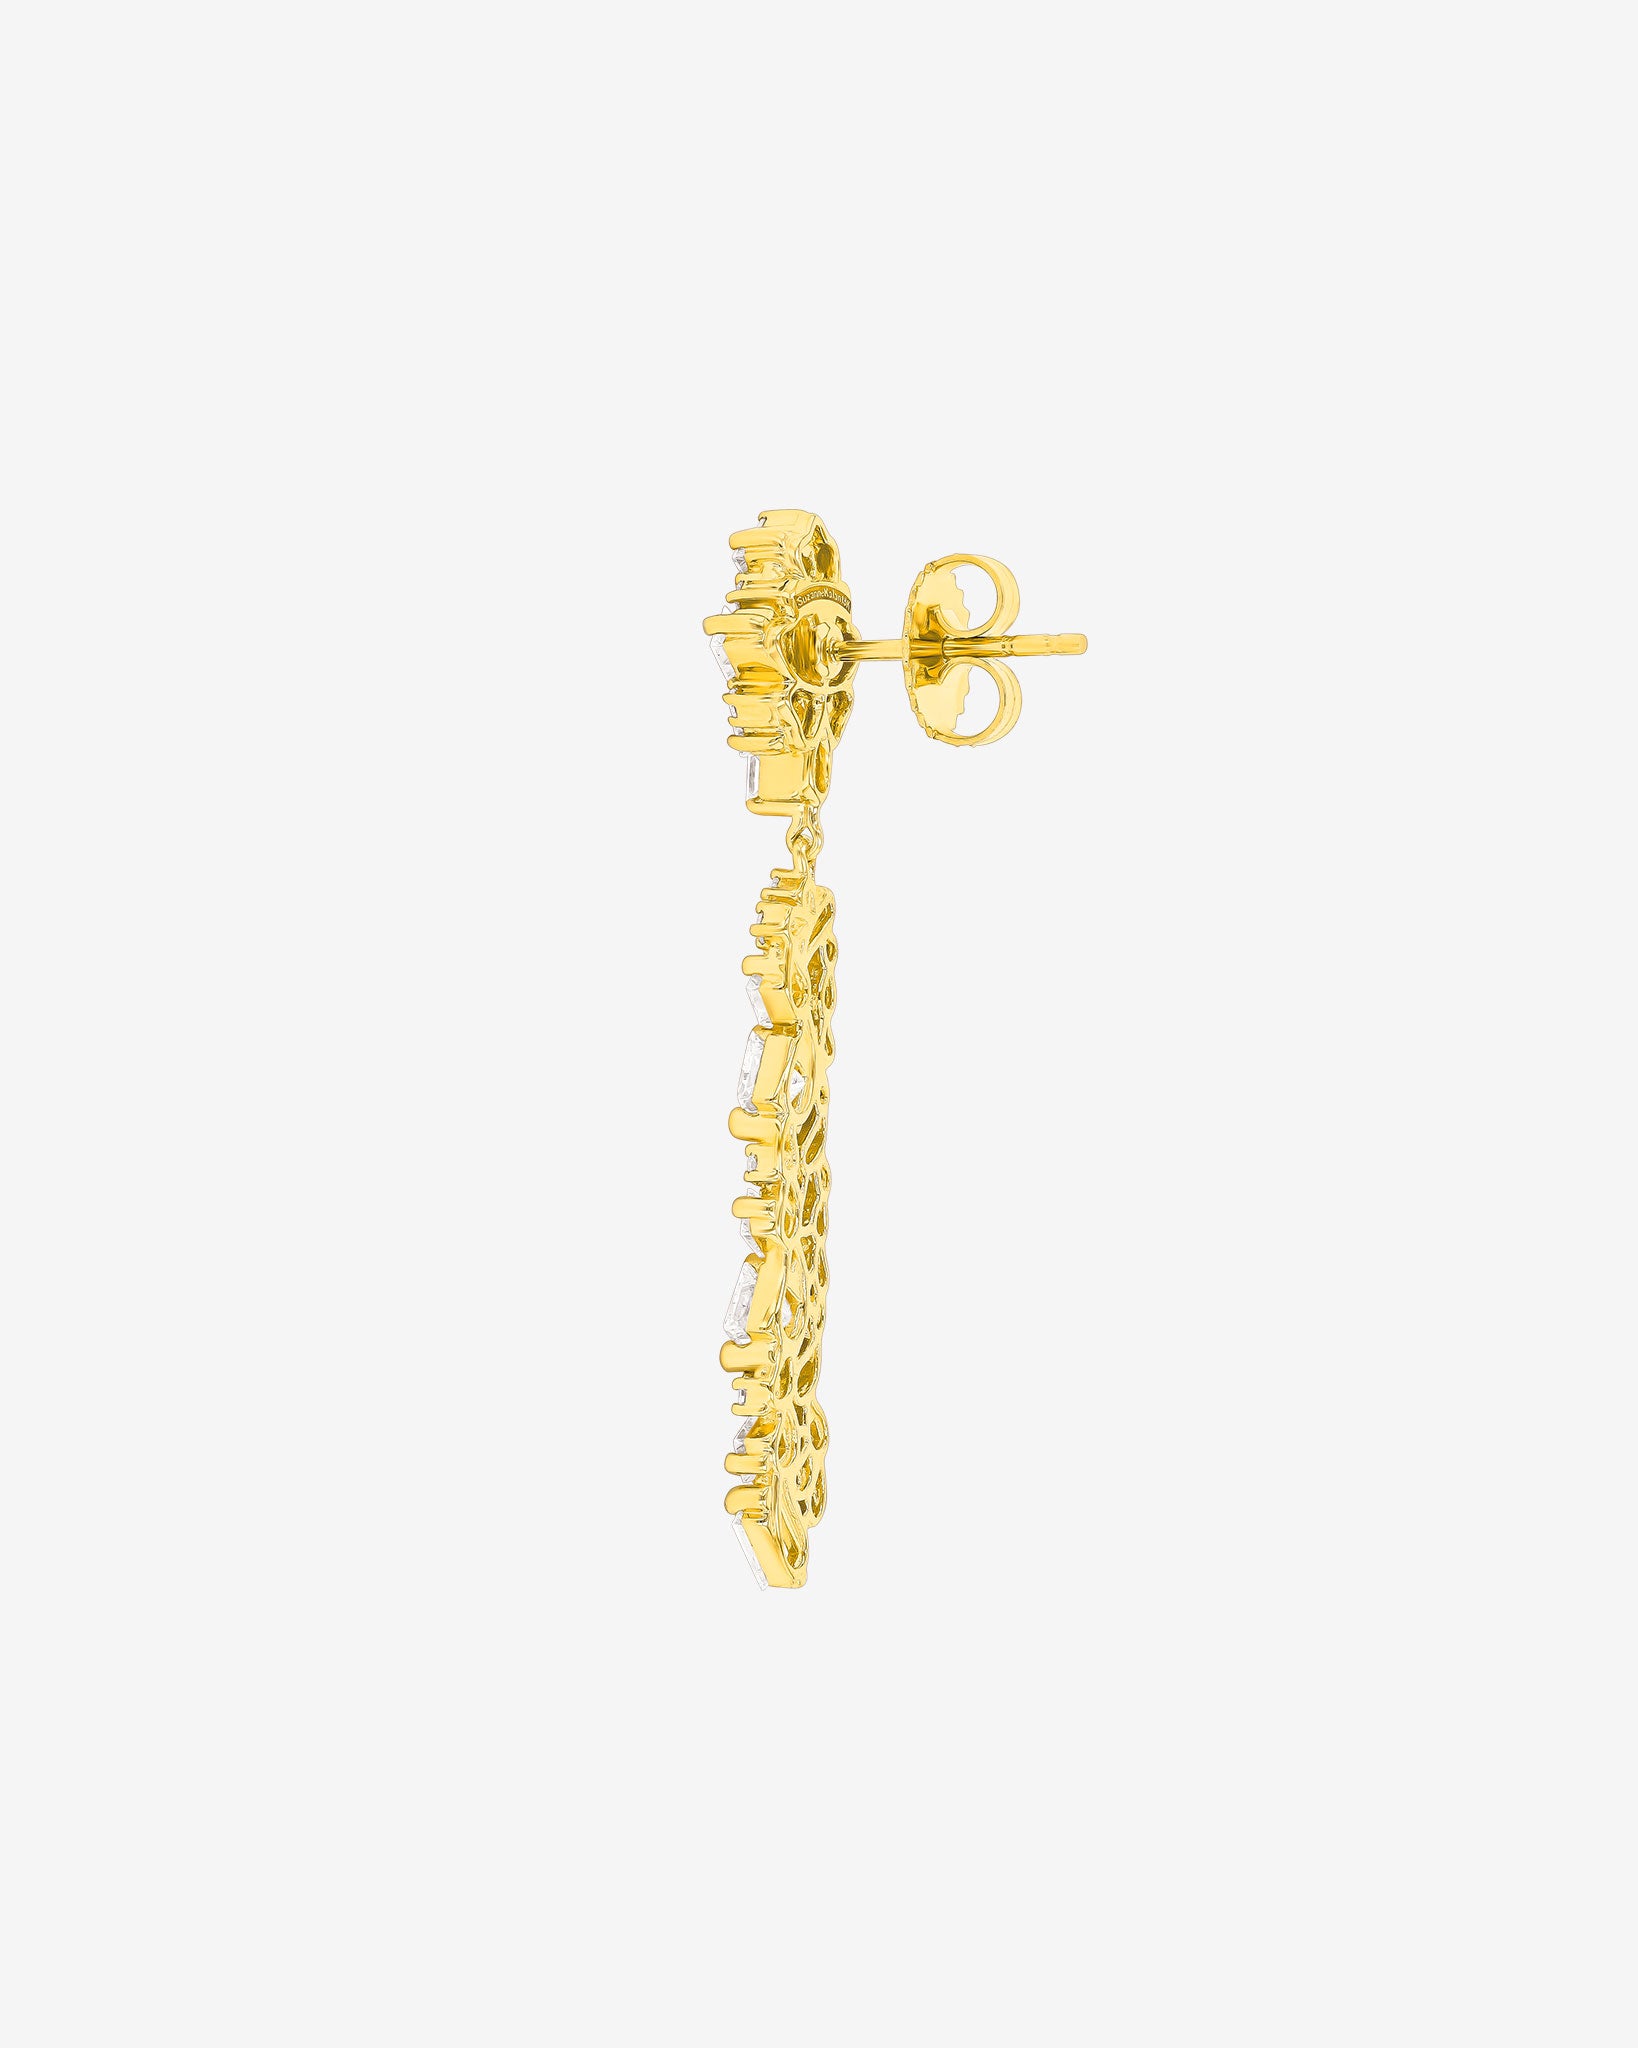 Suzanne Kalan La Fantaisie Sunbeam Diamond Drop Earrings in 18k yellow gold